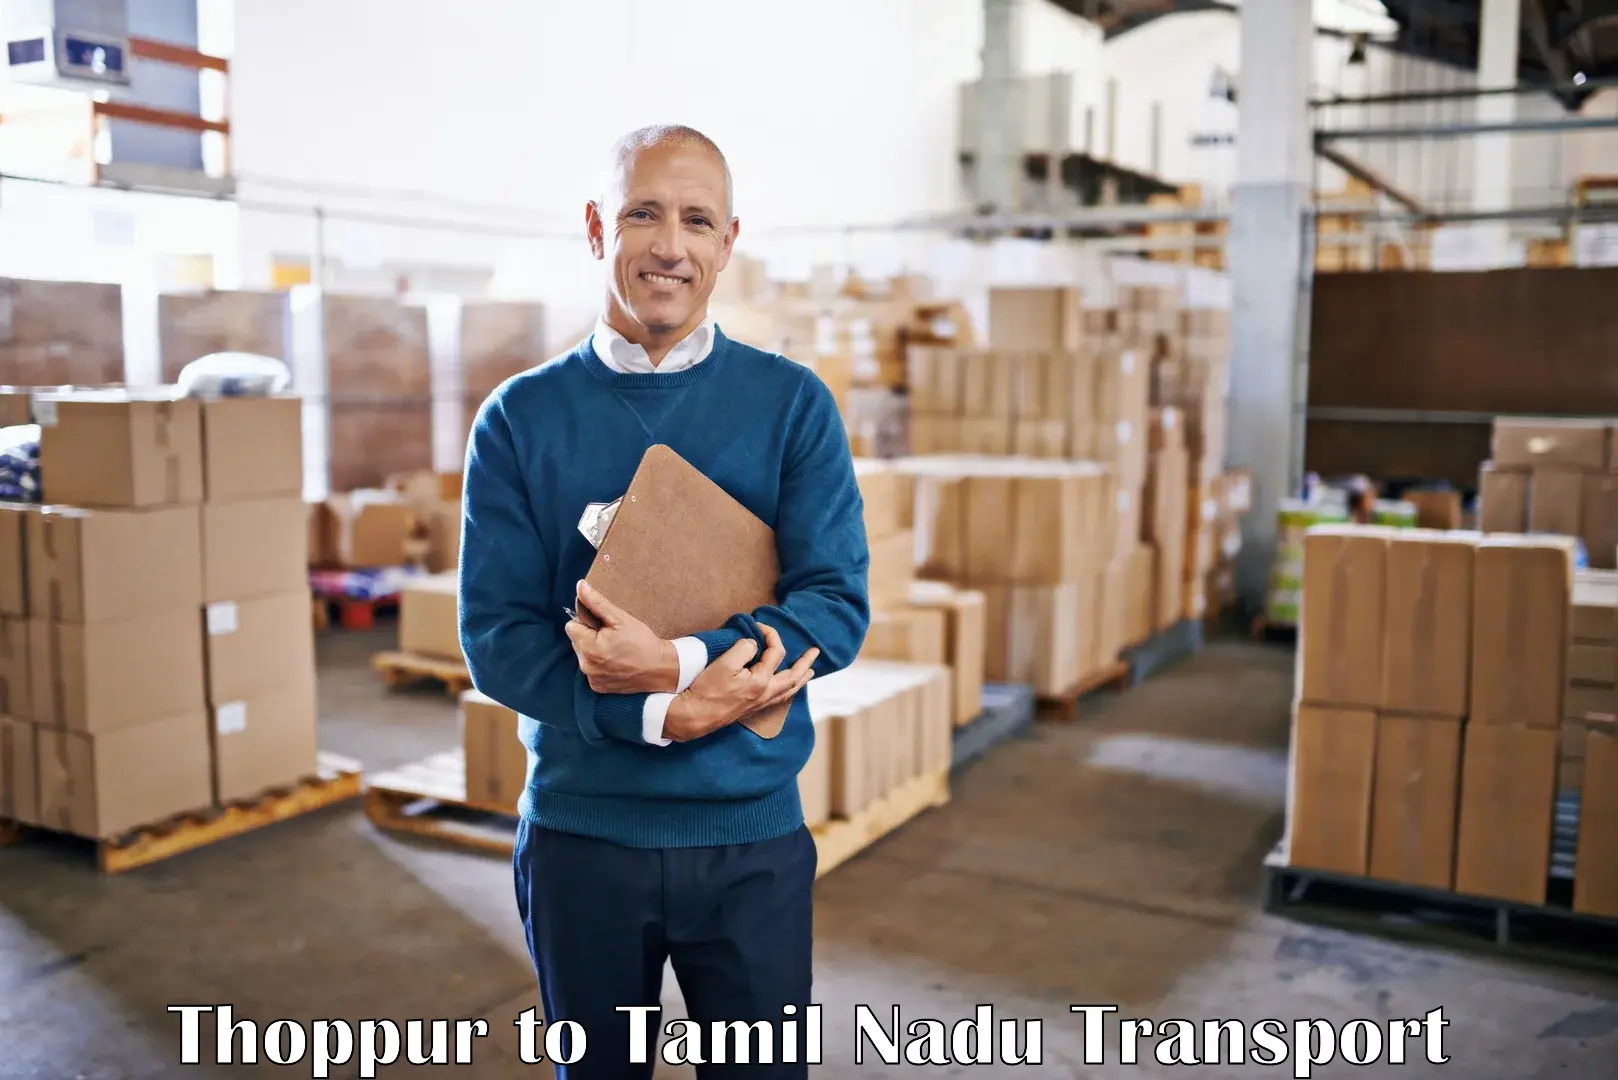 Commercial transport service Thoppur to Rasipuram